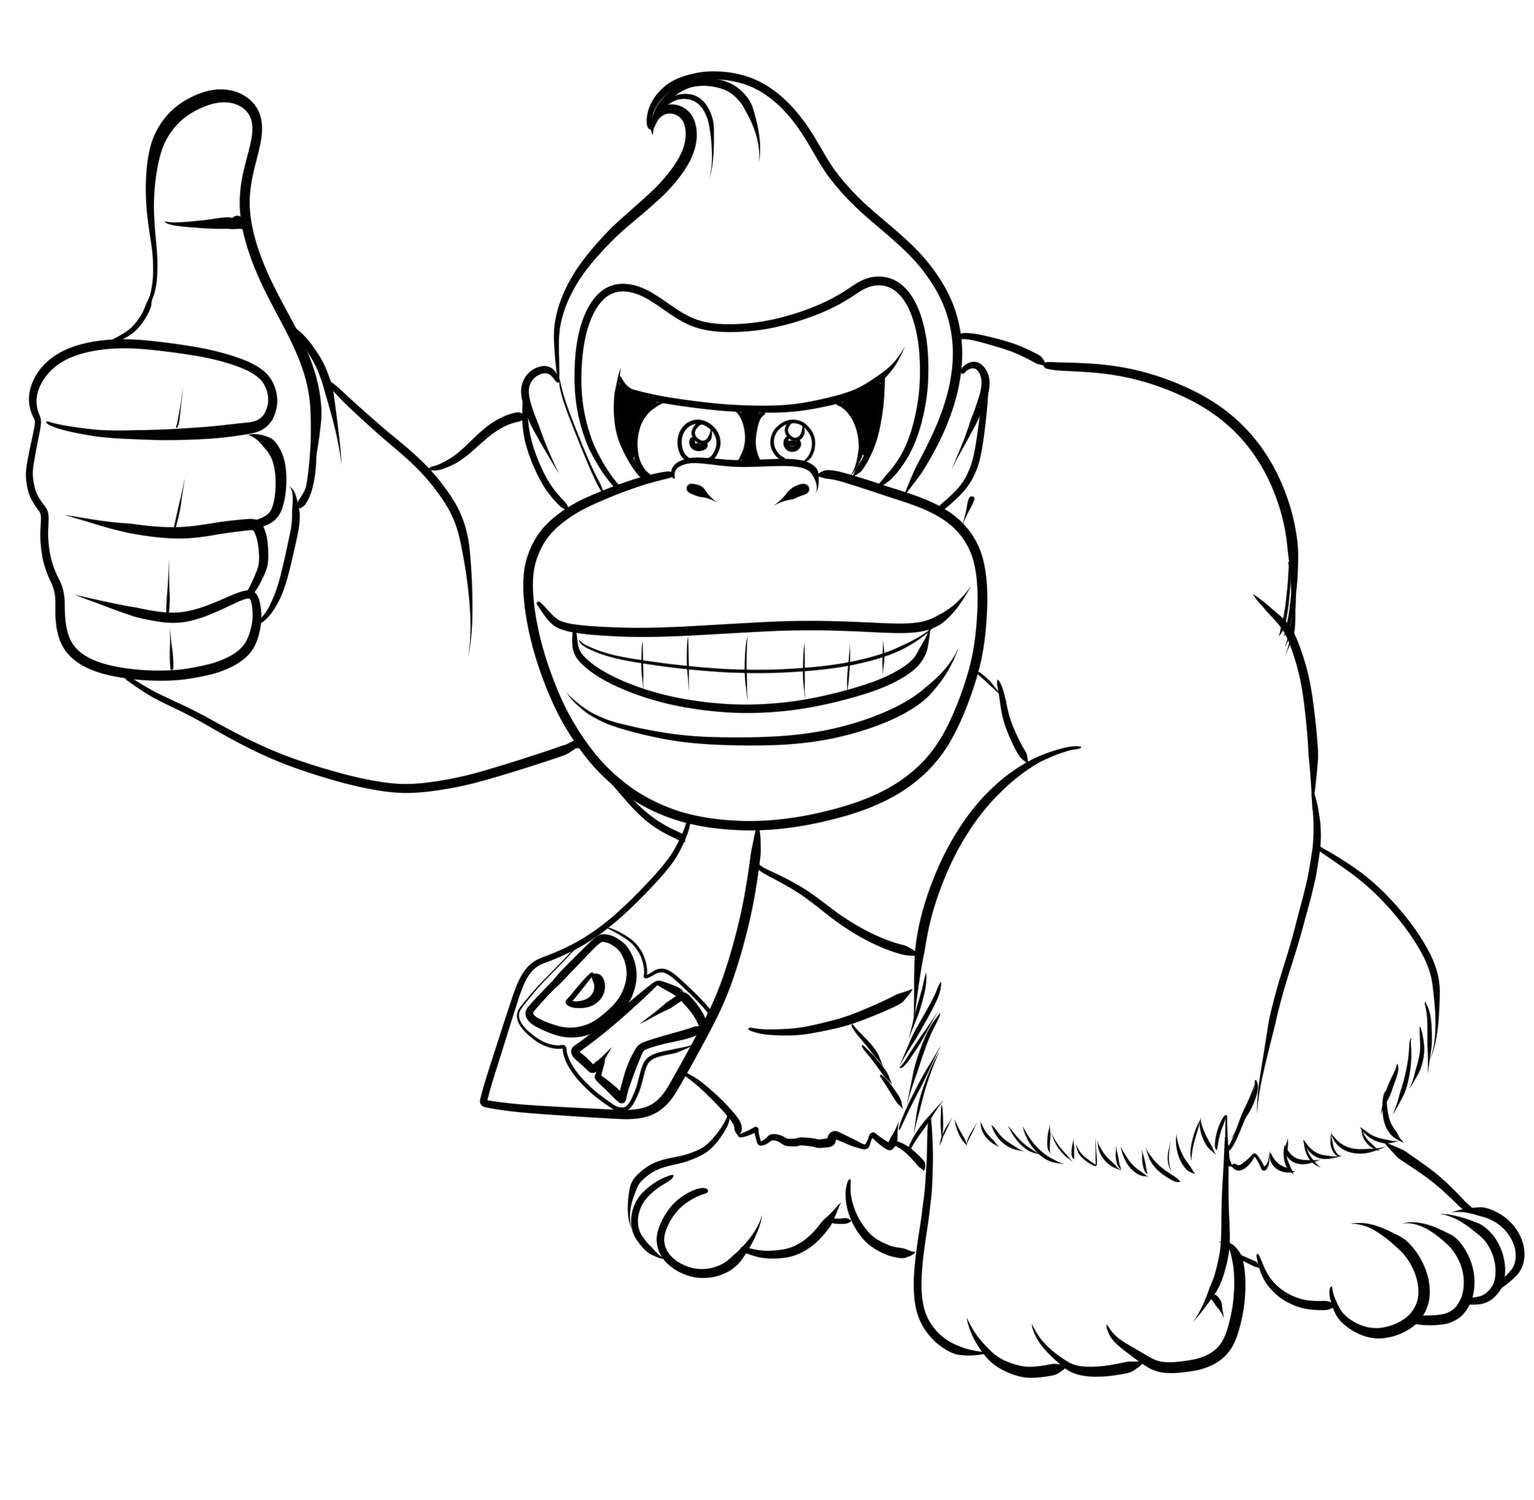 Disegno 01 di Donkey Kong da stampare e colorare